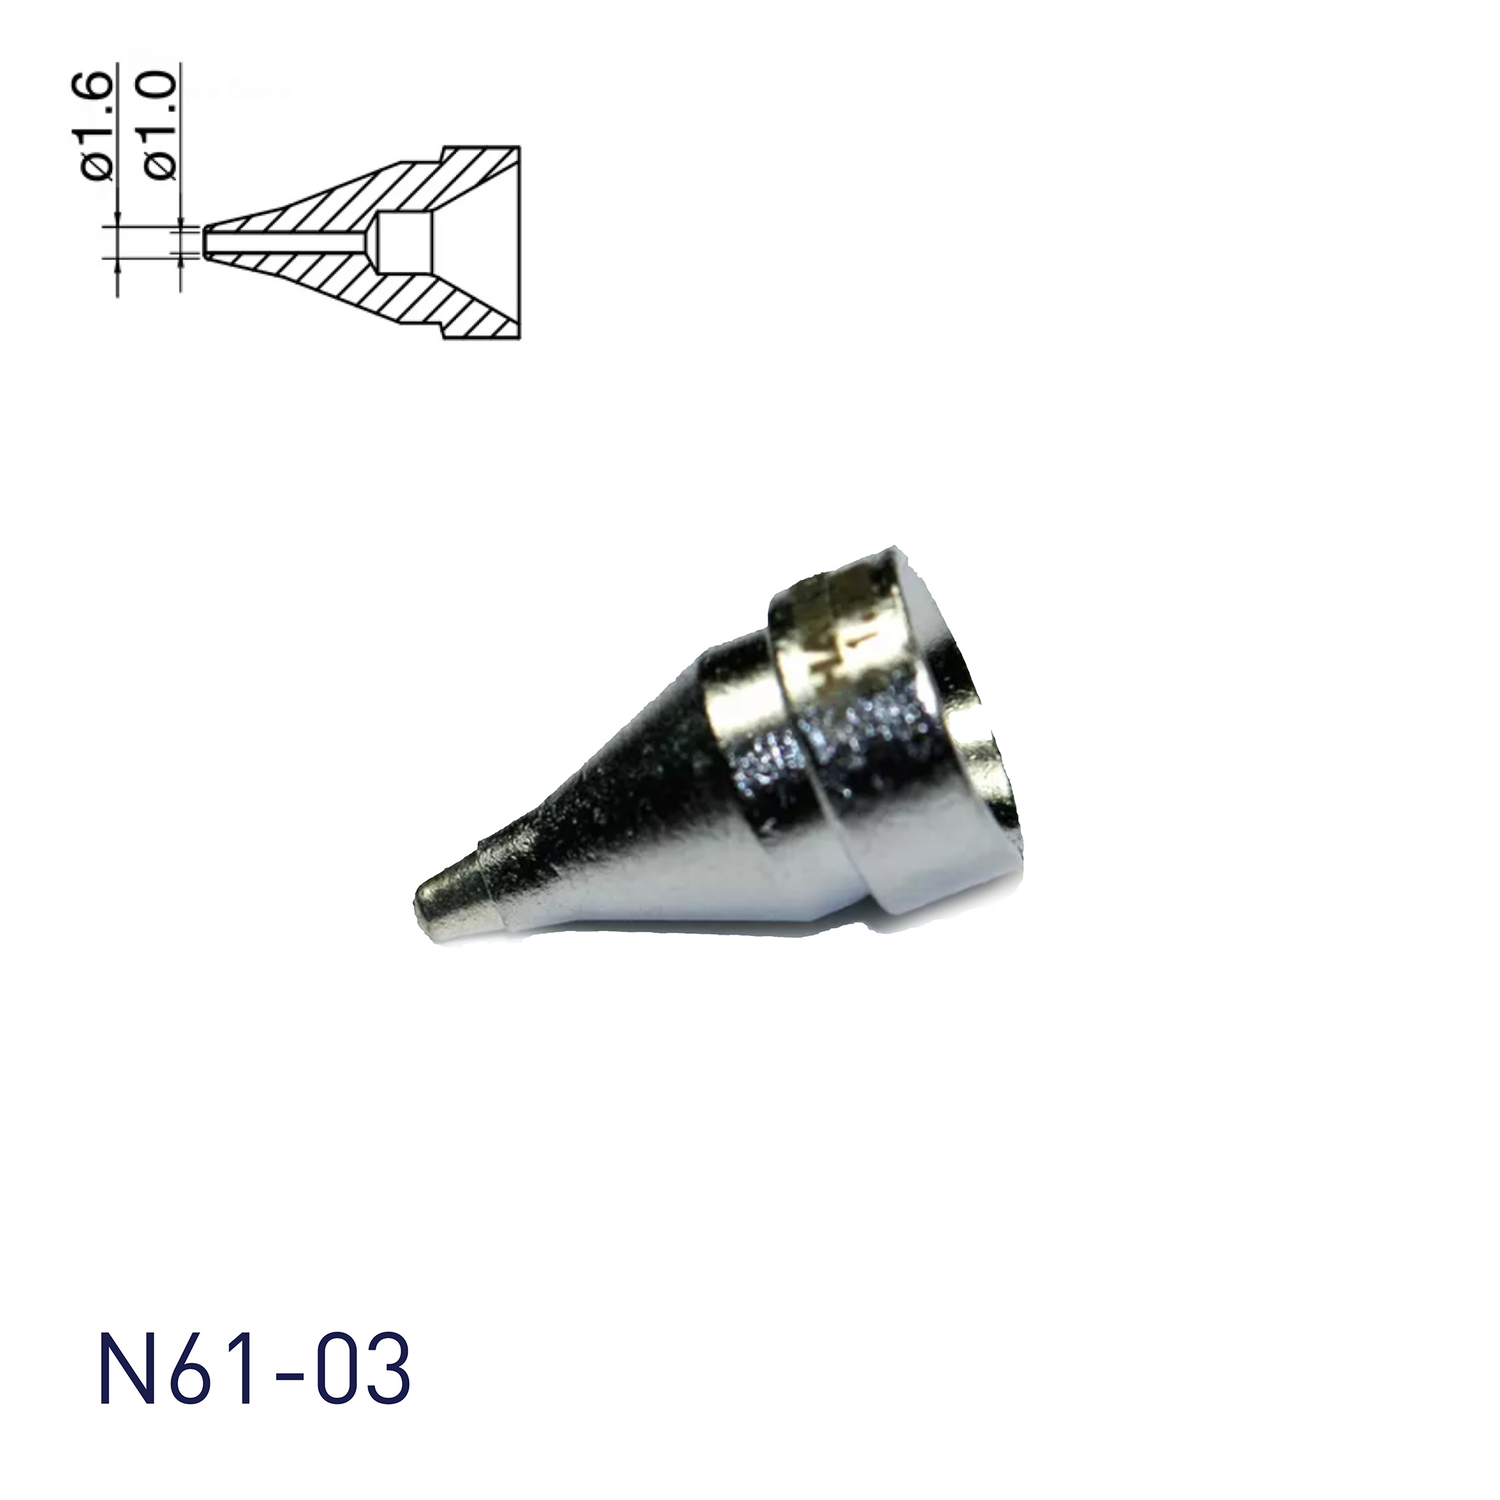 N61-03 Nozzle Φ1.0 - Hakko Products Pte Ltd